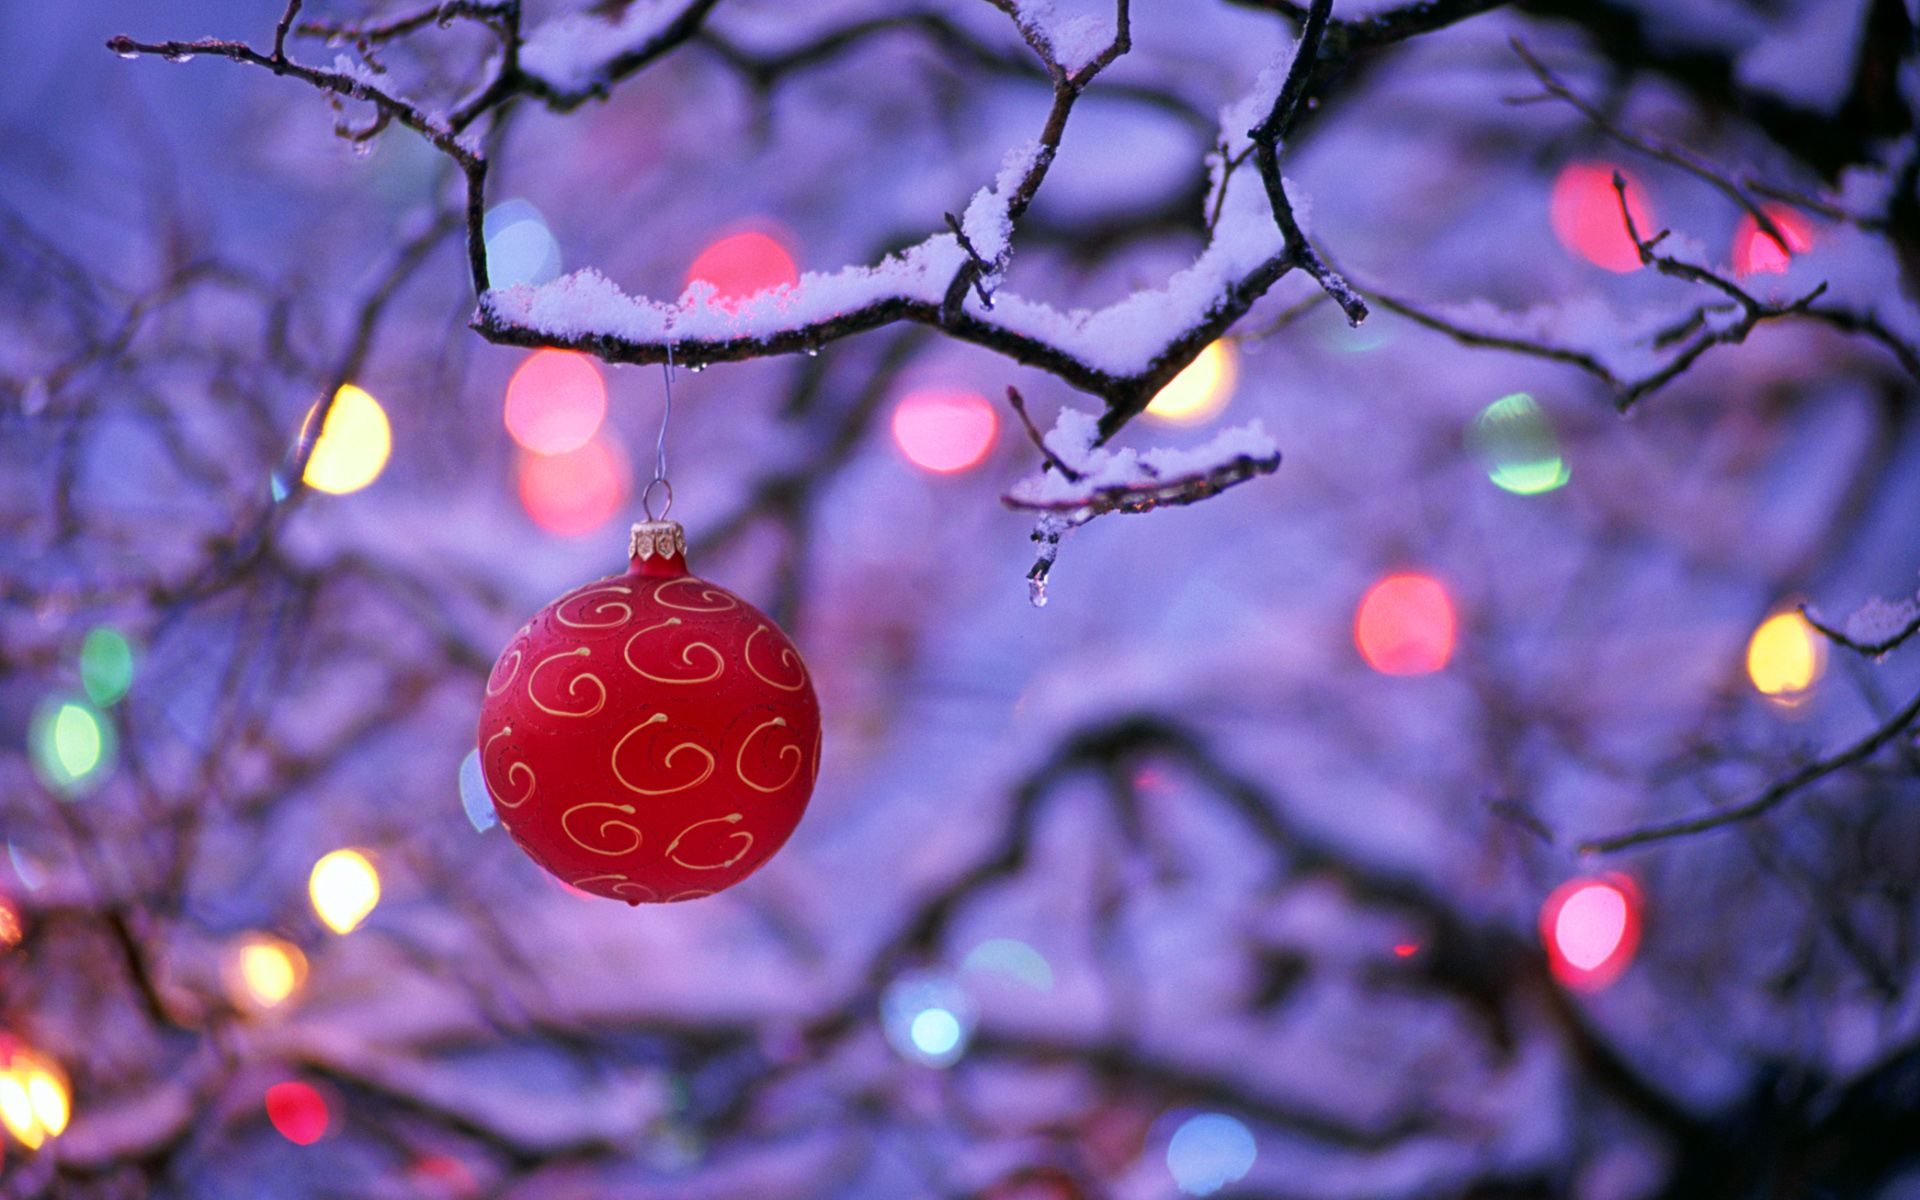 Muốn trải nghiệm mùa lễ hội thật sự? Hãy thay đổi hình nền desktop sang những hình ảnh Giáng sinh dễ thương và ý nghĩa. Hình ảnh của những tuyết rơi, cây thông, quà tặng và ngôi sao sẽ khiến cho không gian làm việc của bạn tươi sáng và đầy vui tươi.